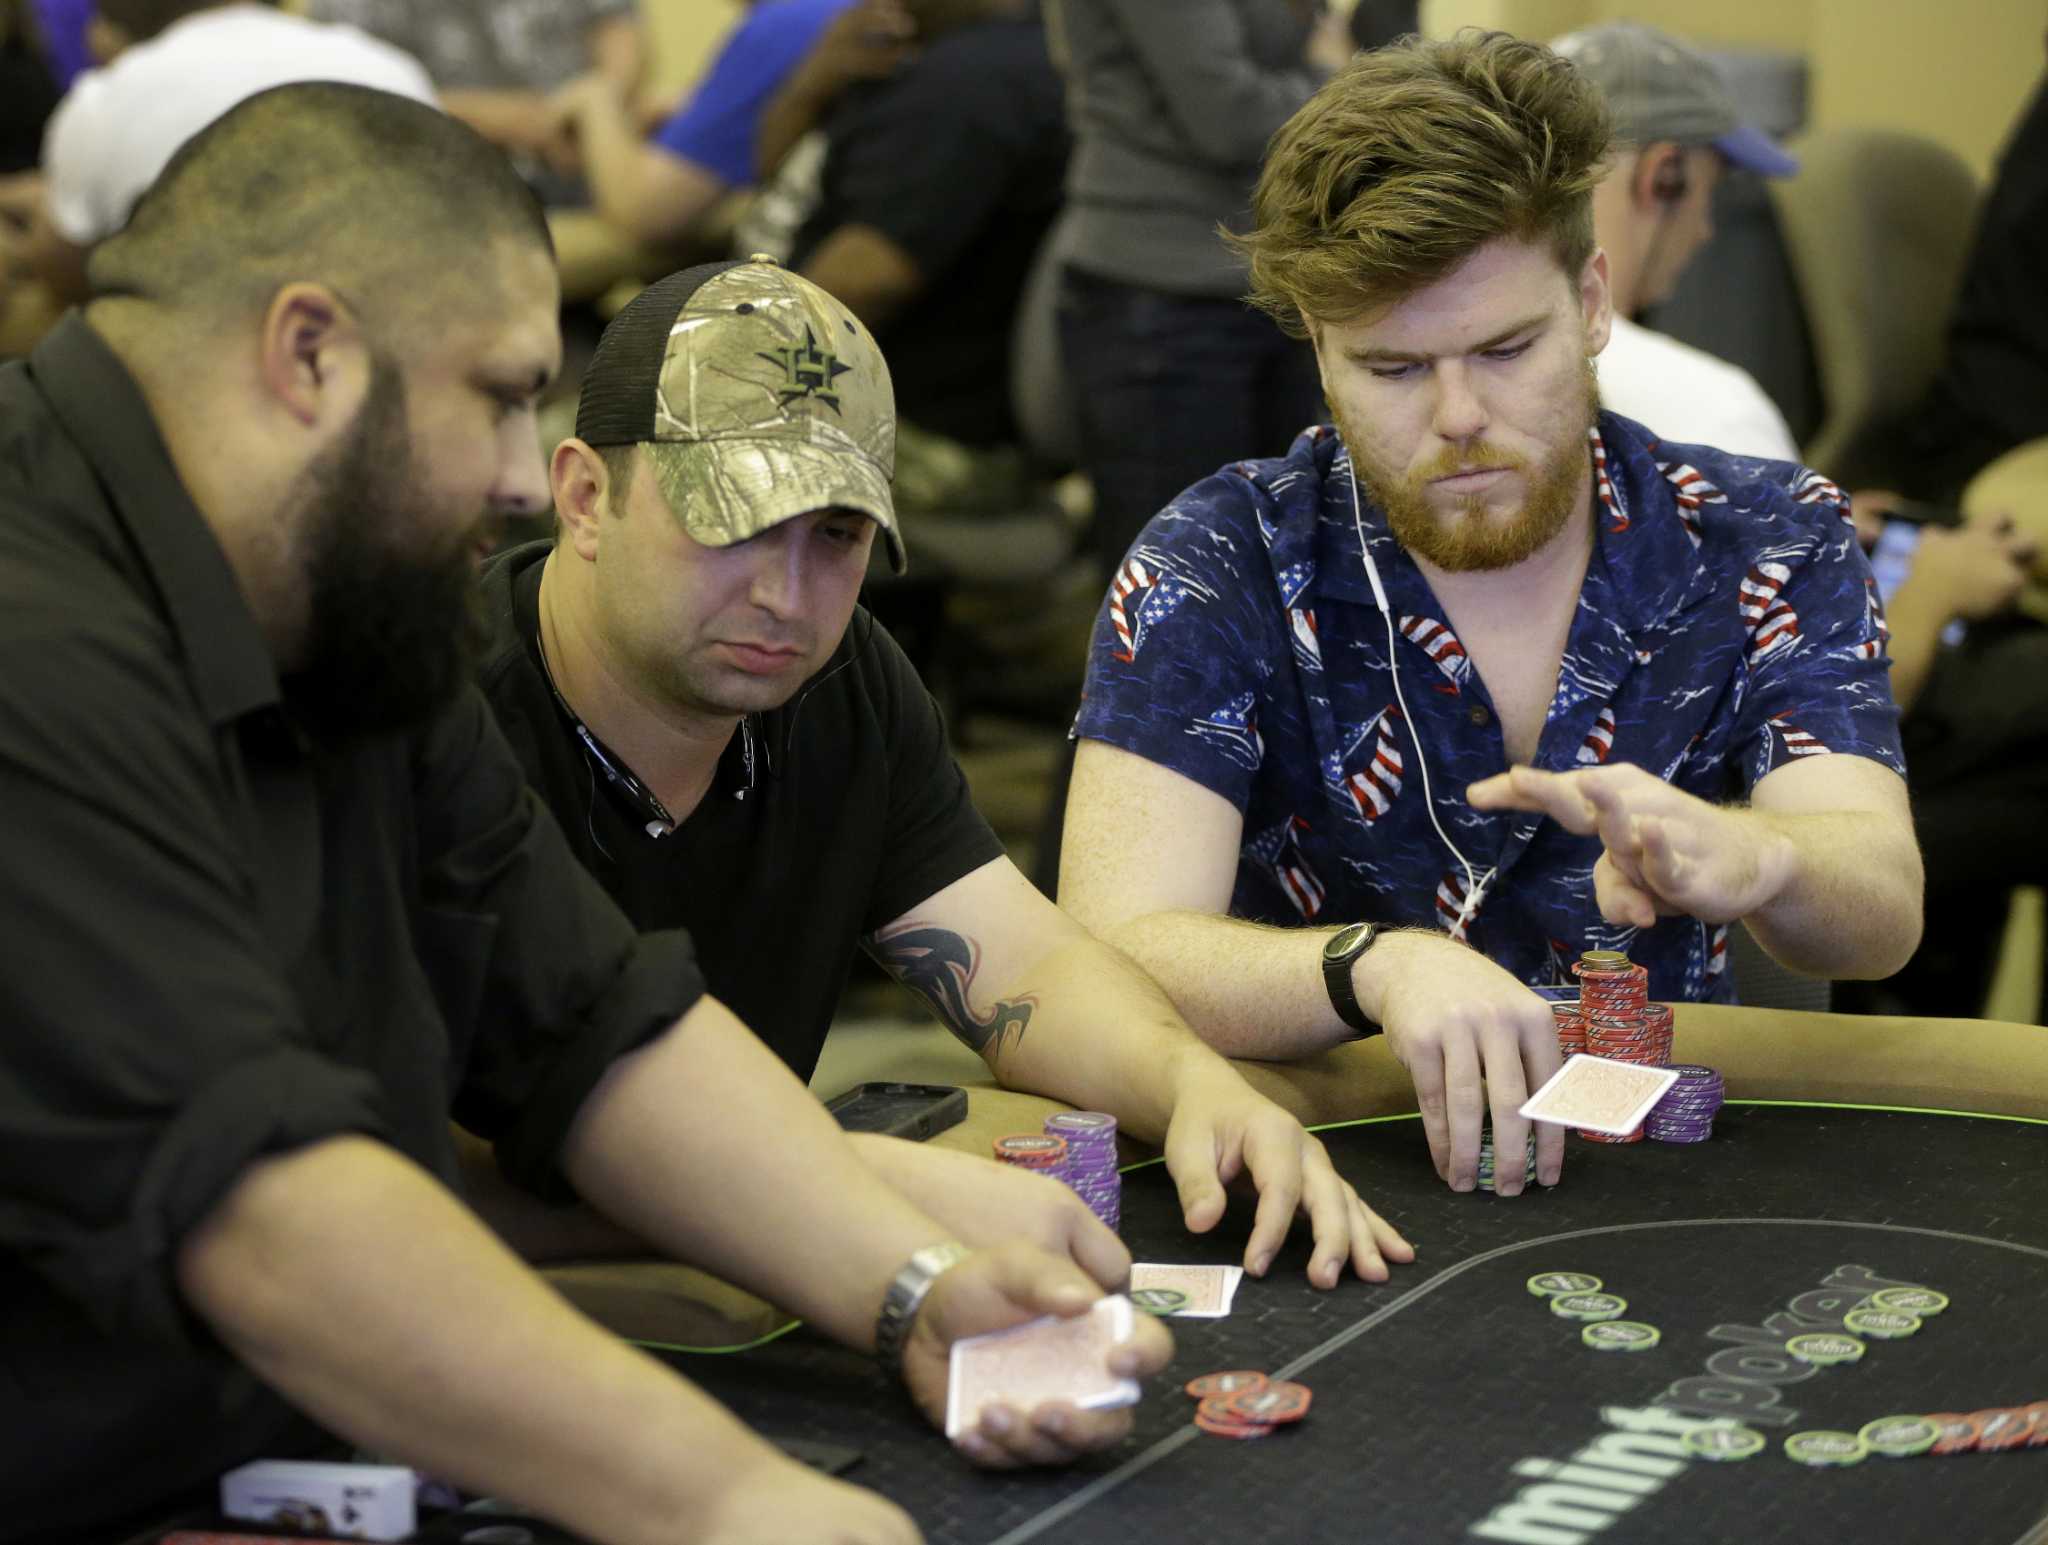 Full house poker austin texas lottery